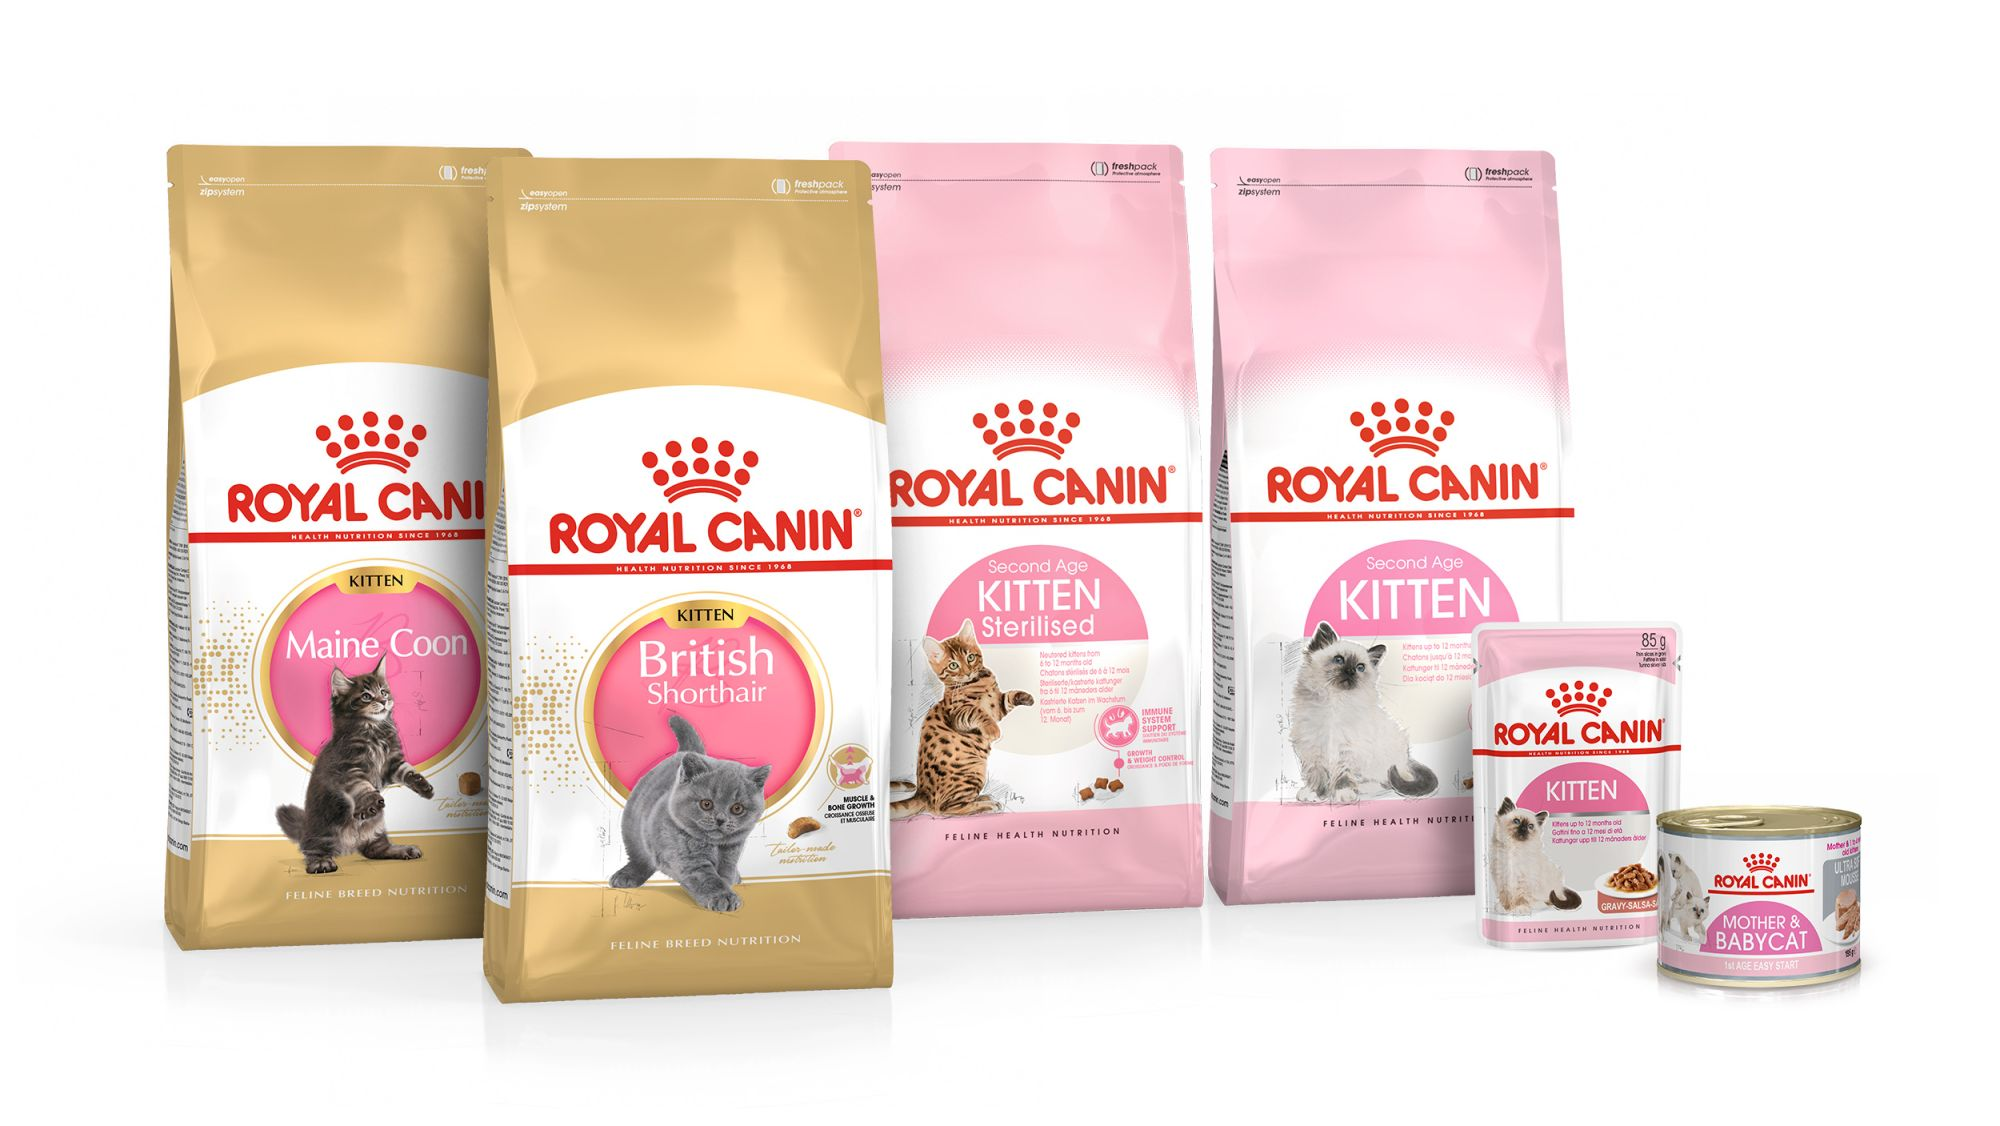 Shots van Royal Canin-productverpakking voor kittens